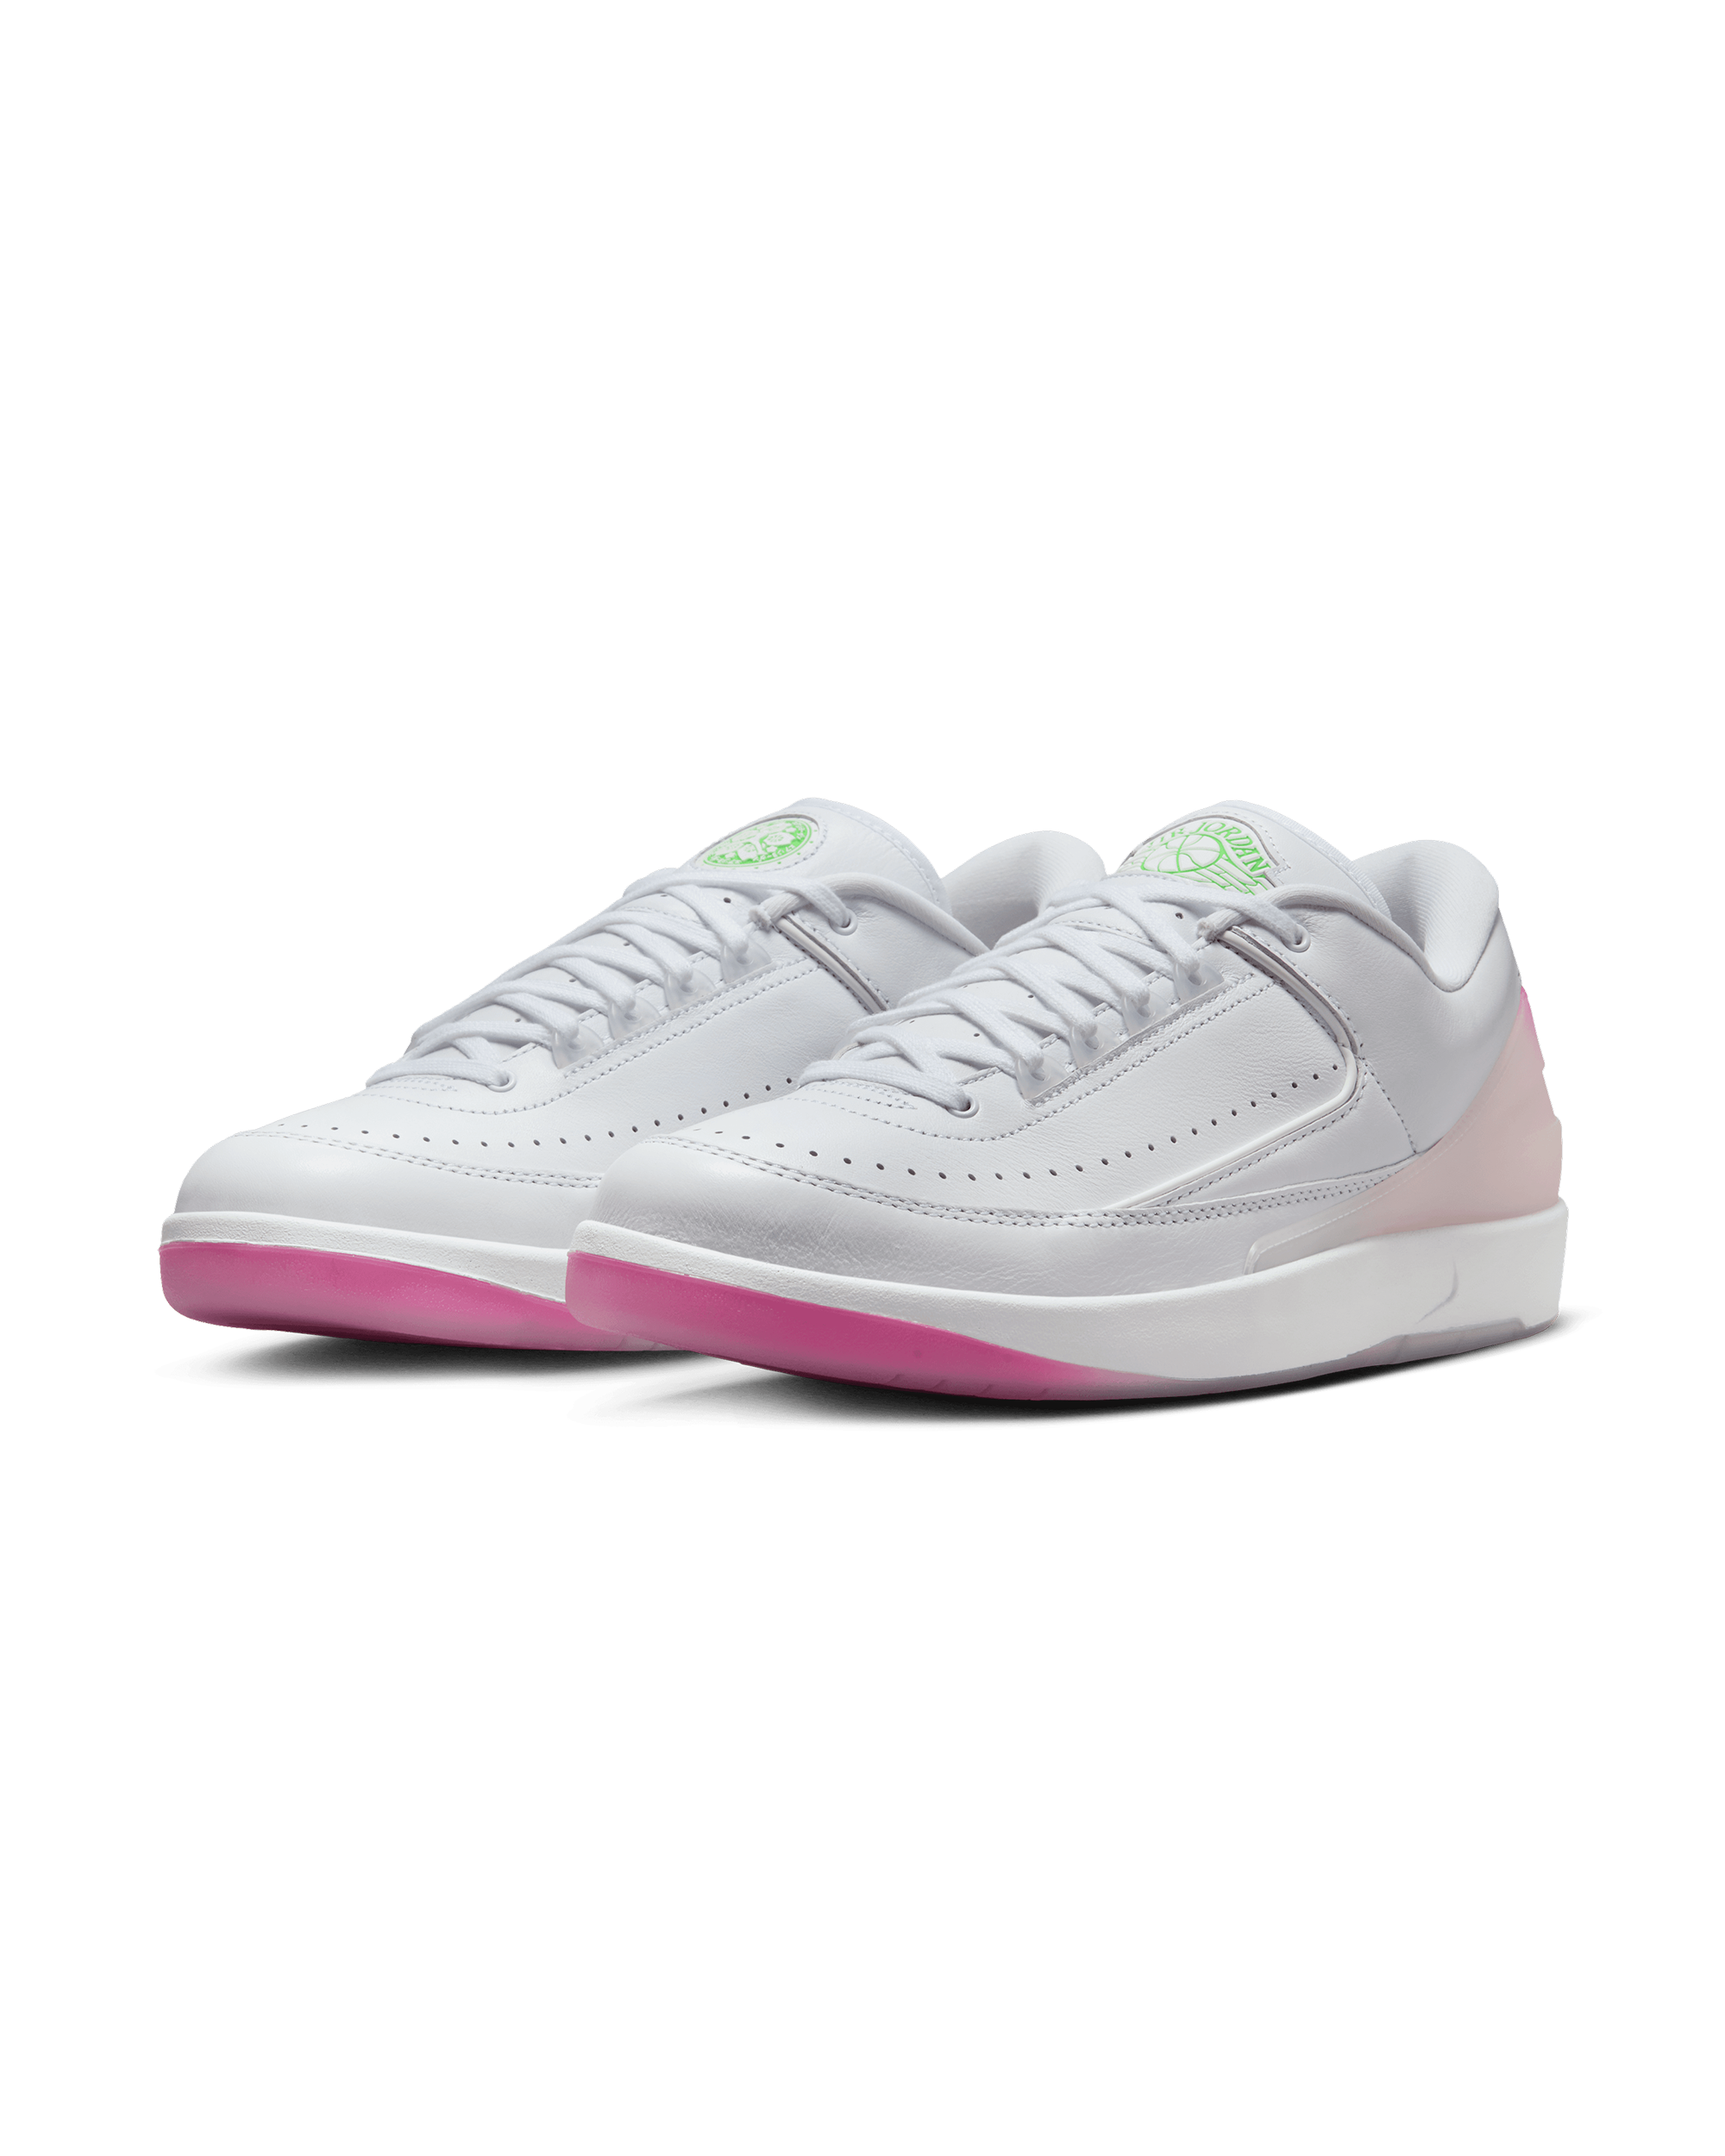 Air Jordan 2 "Sakura" - White / Strike Green / Playful Pink